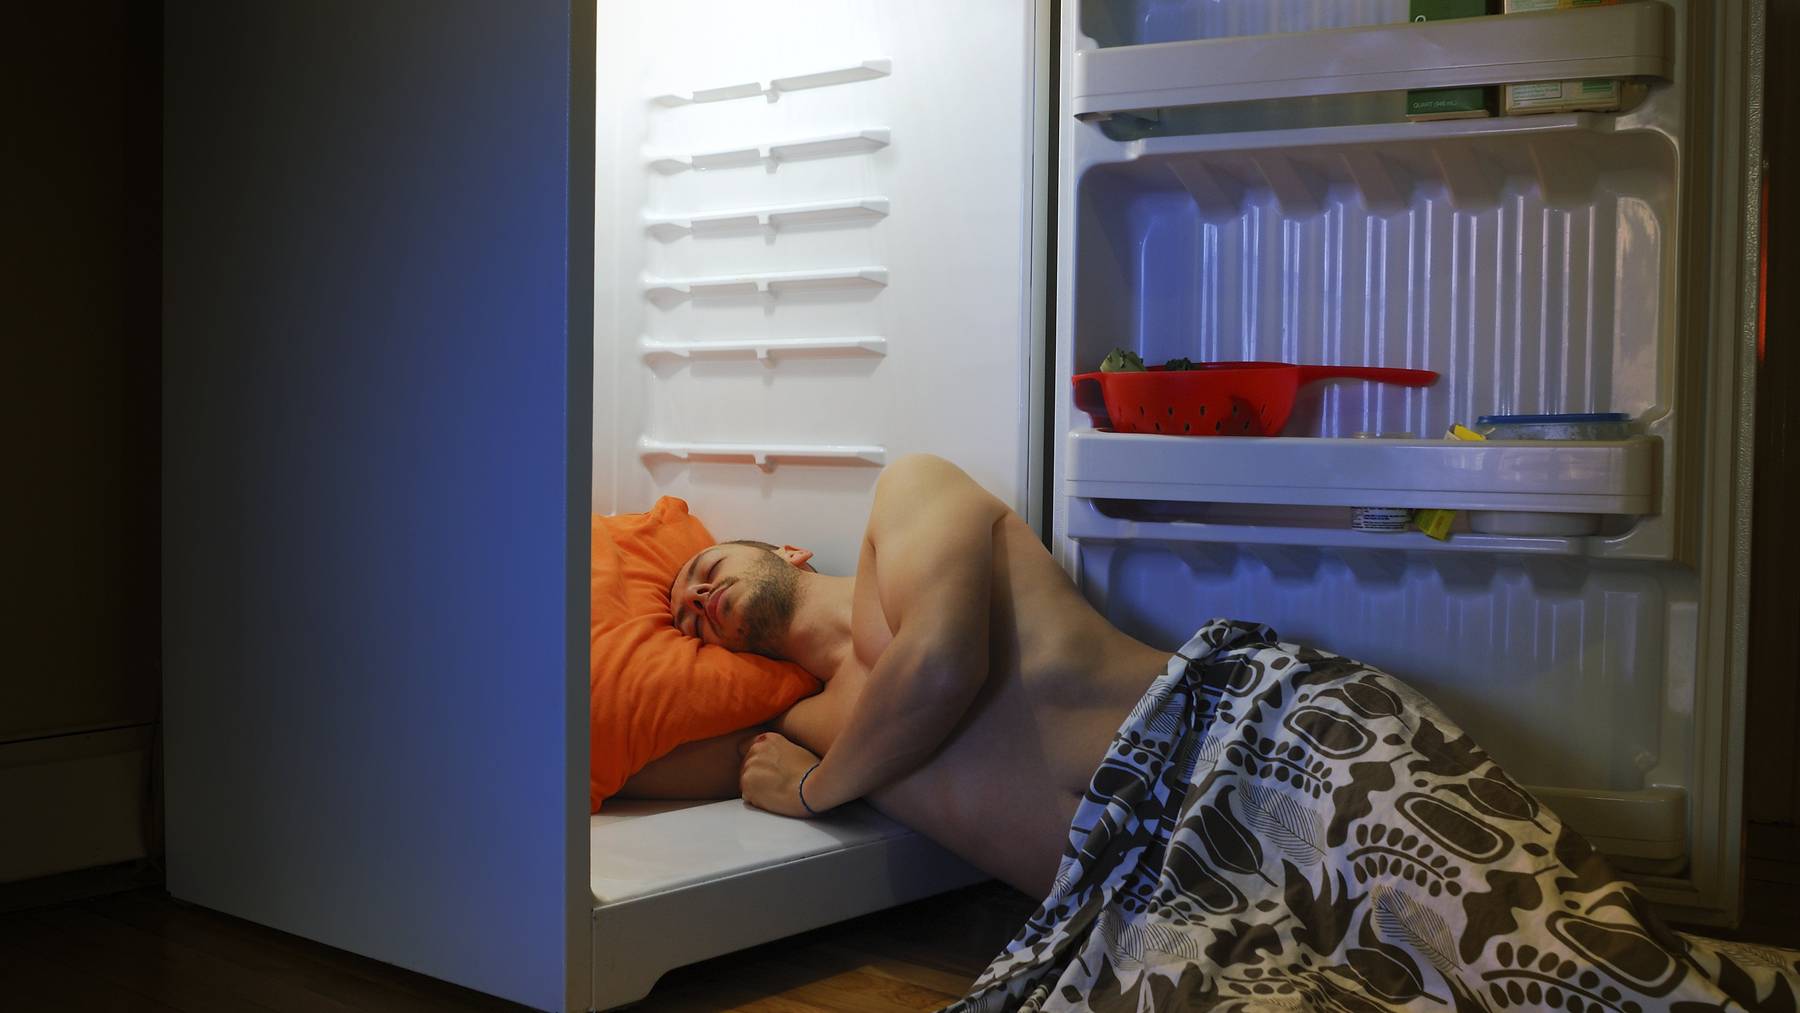 Sicher unbequem und nicht gerade umweltbewusst aber eine mögliche Lösung: Schlafen vor dem Kühlschrank.